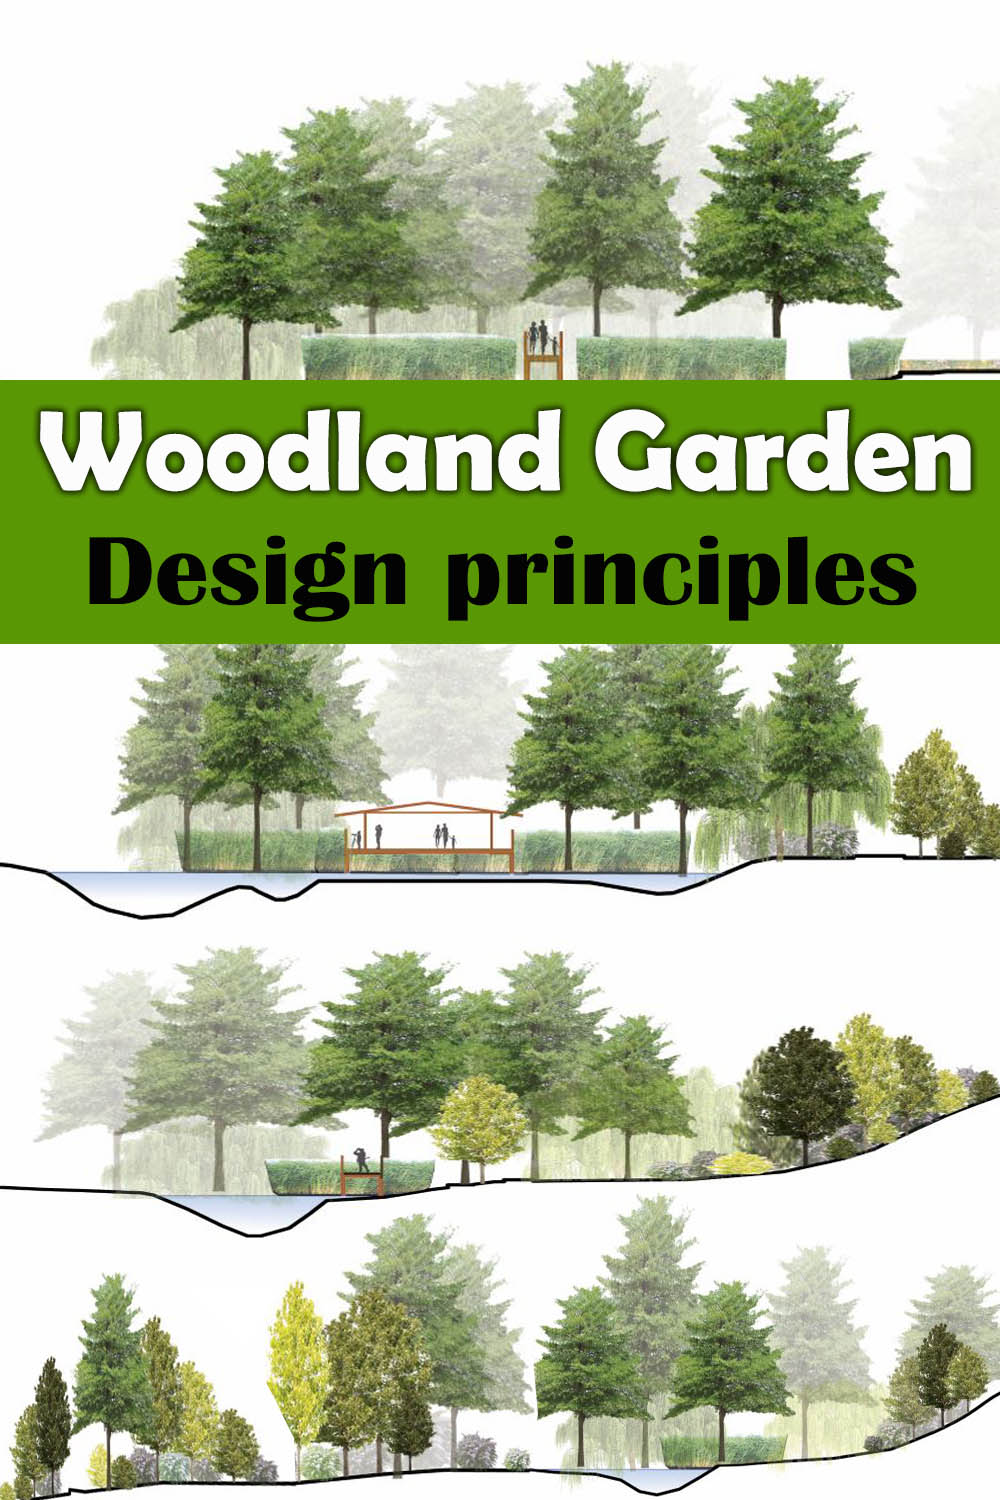 Woodland garden design